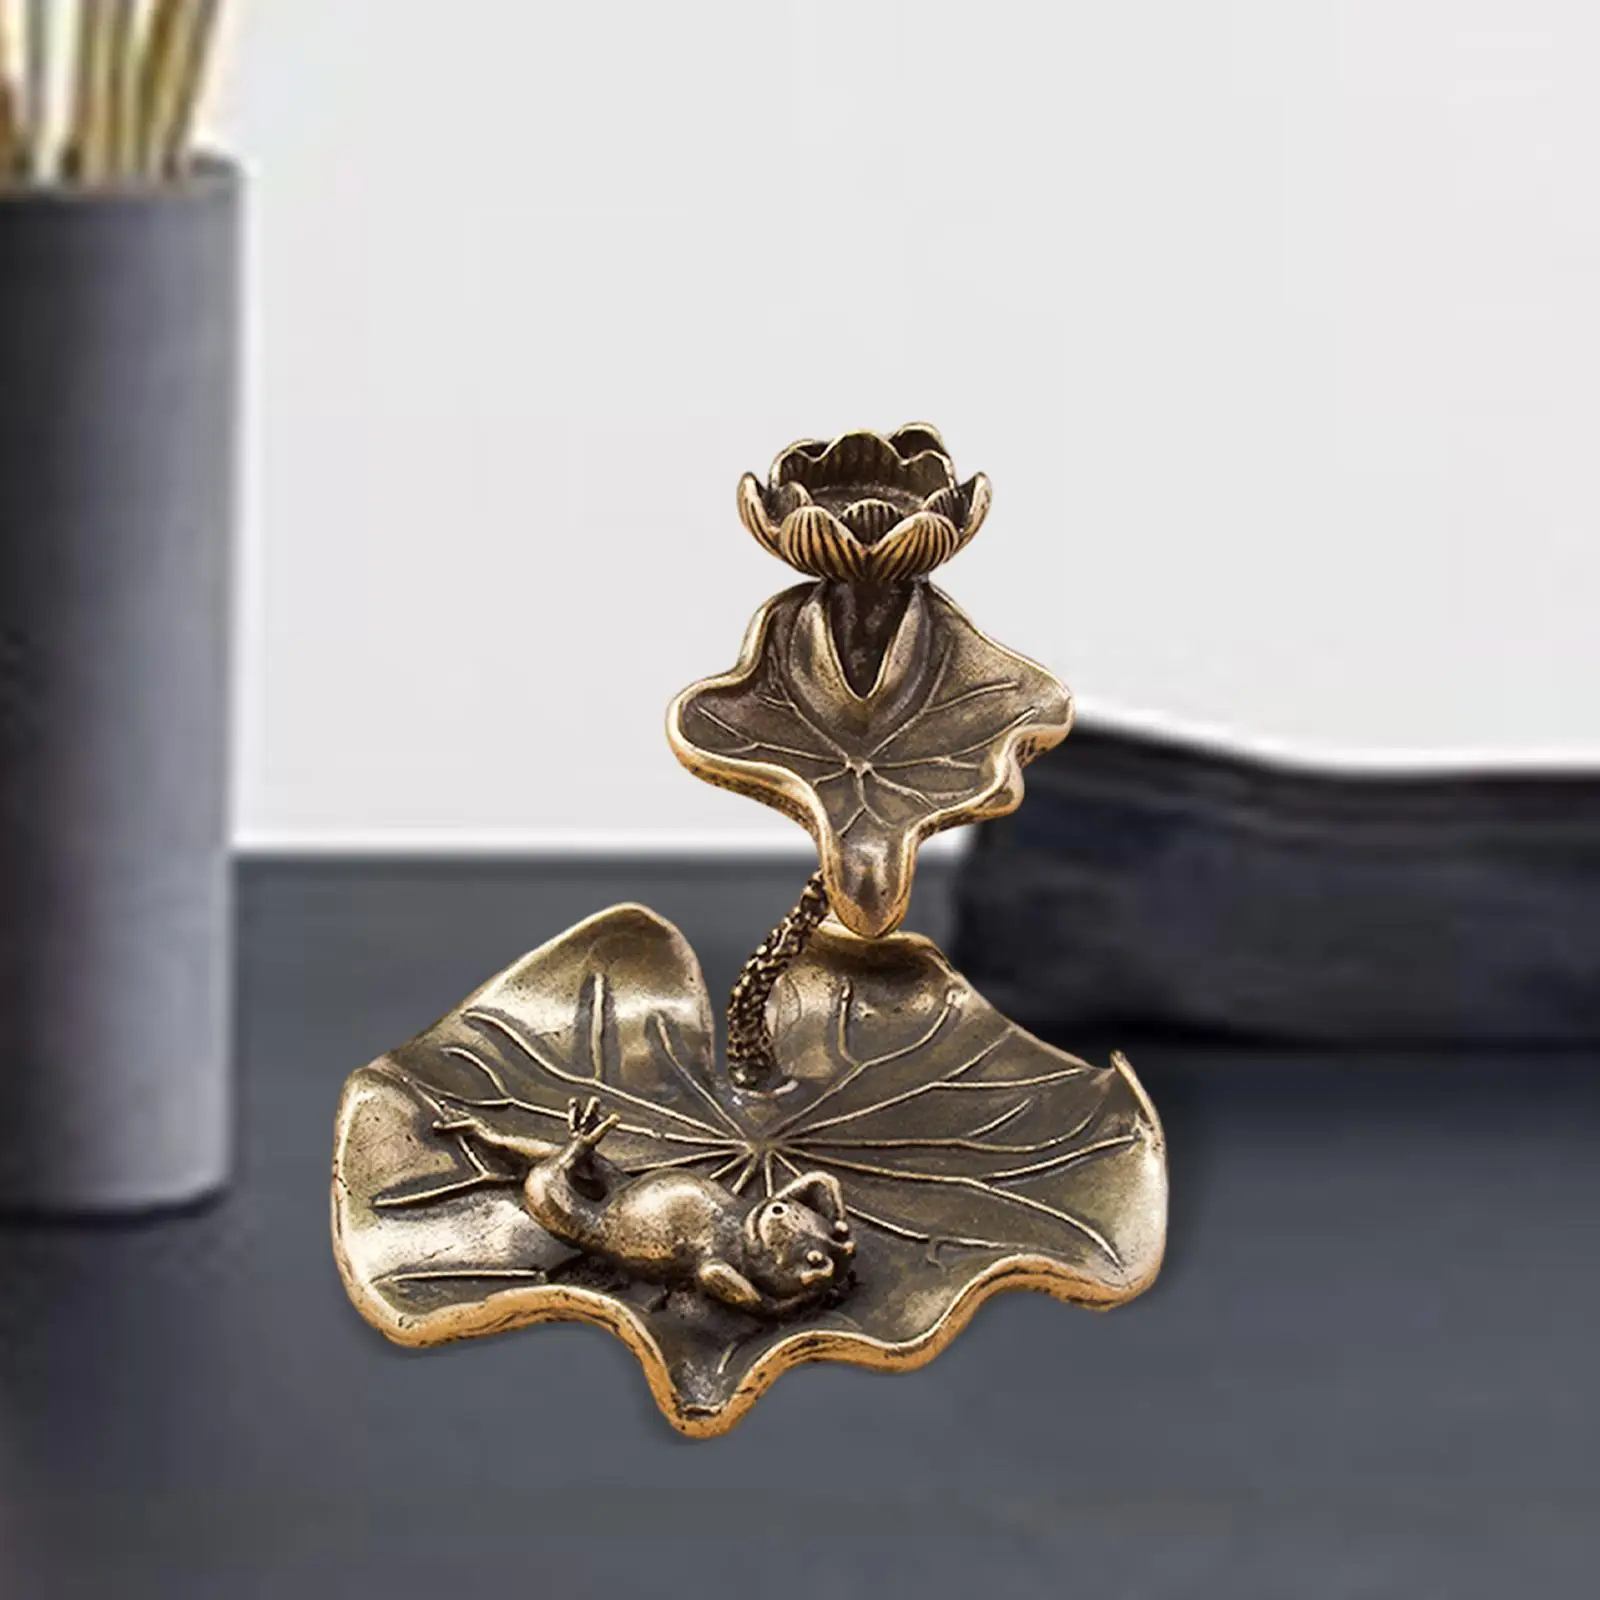 Brass Incense Holder Backflow Incense Burner Tabletop Incense Cone Holders Sculpture Incense Censer for Meditation Relaxation